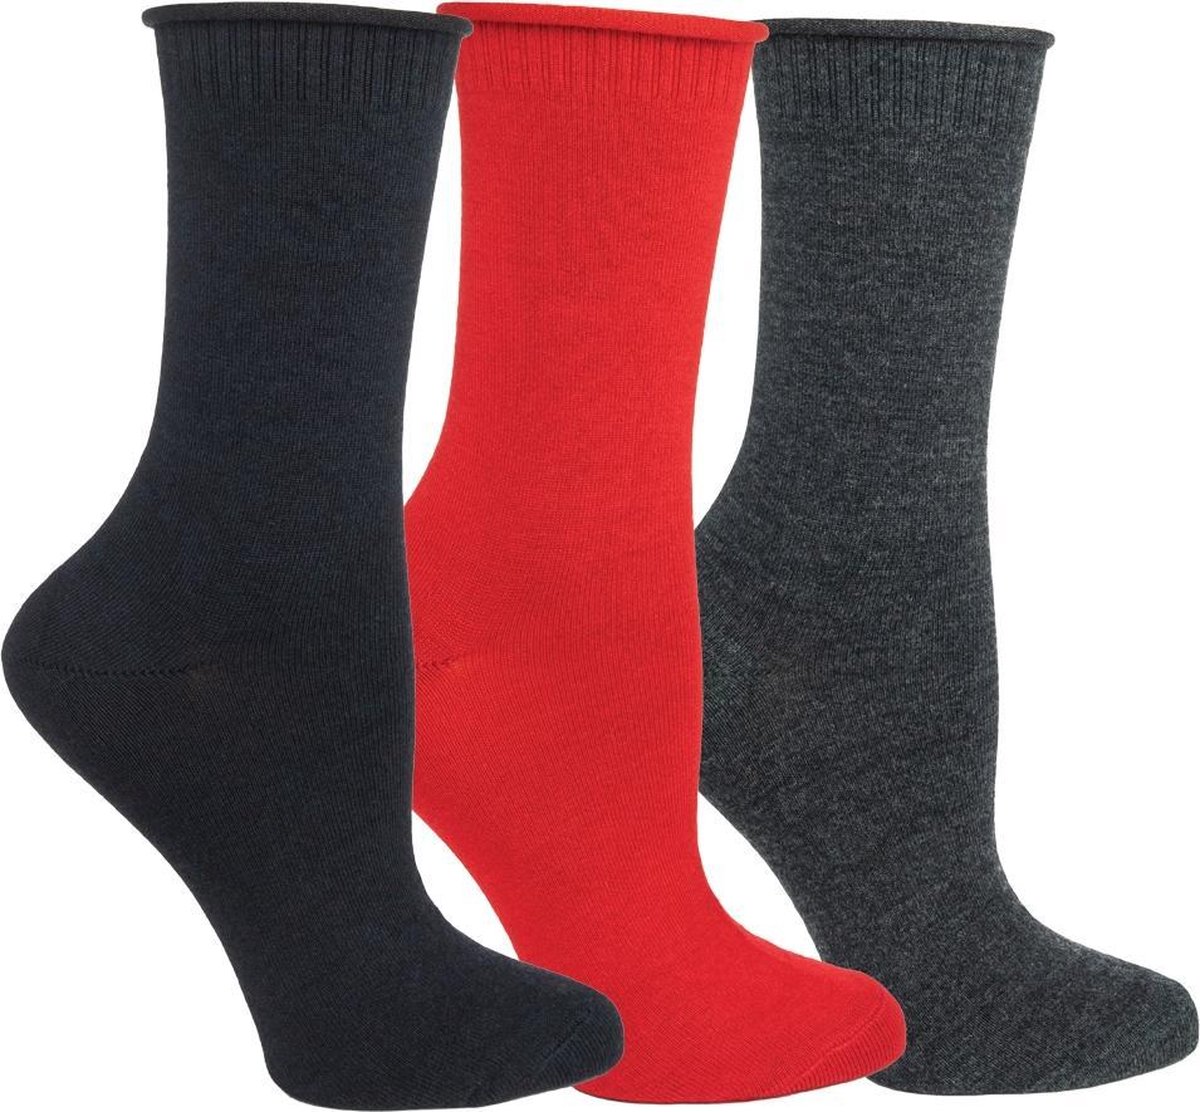 OZONE | Set van 3 Dames Sokken | Collectie wol / zijde | Unisize | Geschenkset | Comfort en stijl in zwart, rood en antraciet